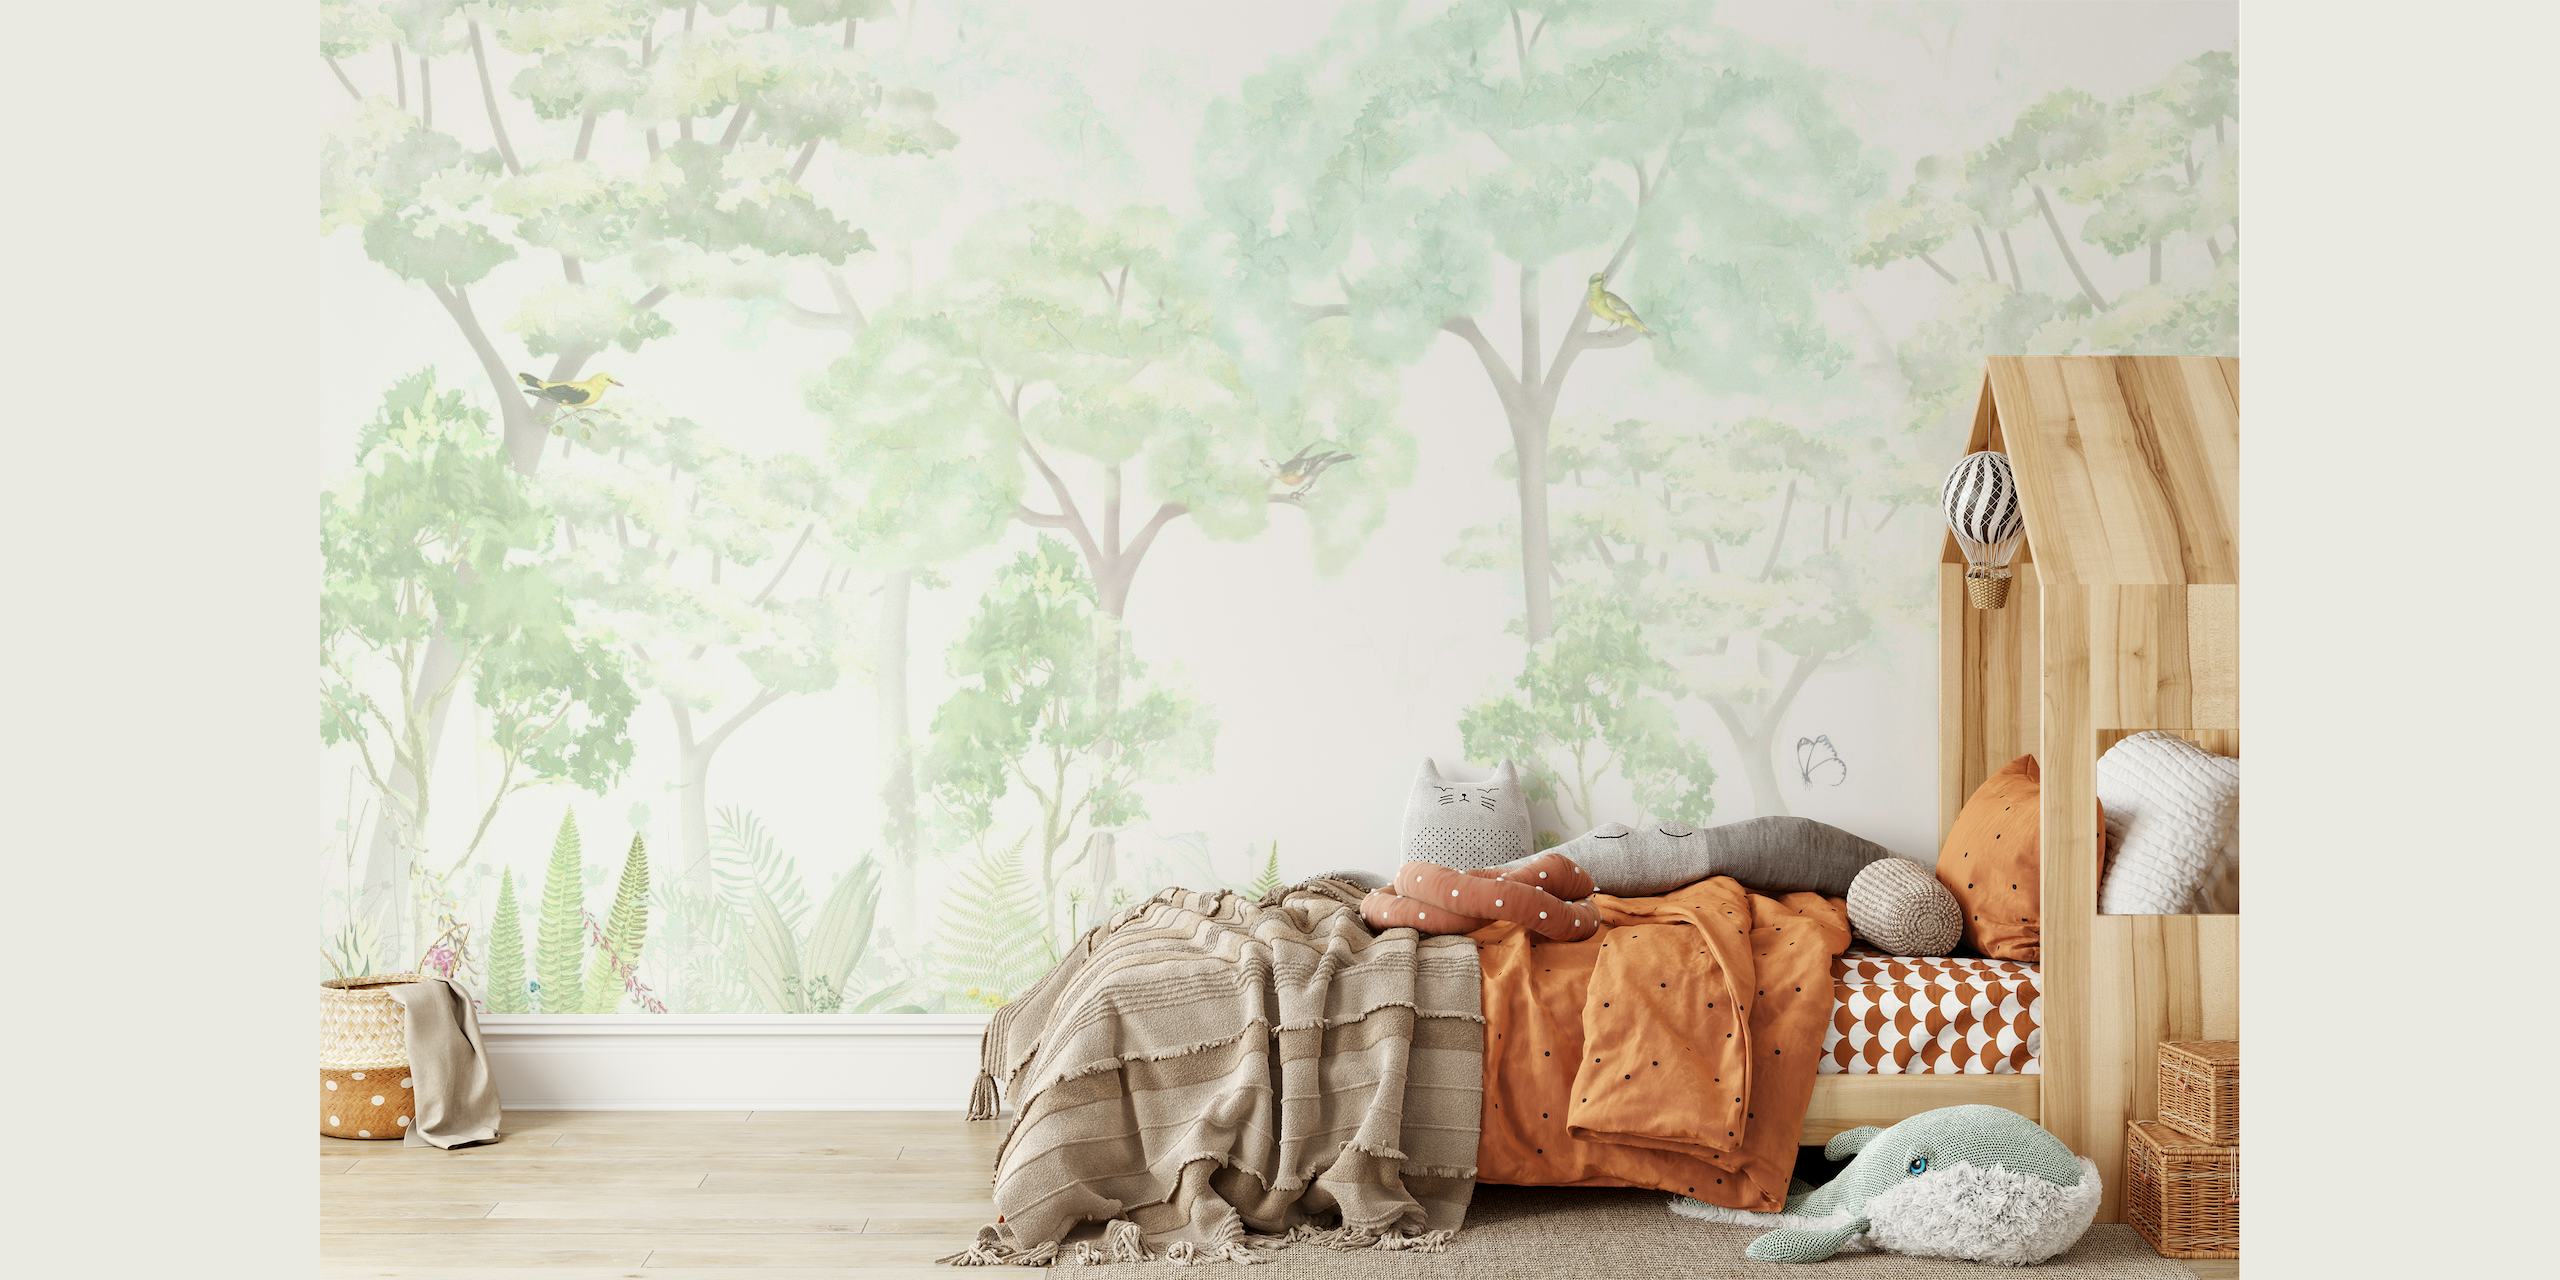 Fantástico mural de pared de bosque de fantasía con suaves tonos verdes y árboles etéreos